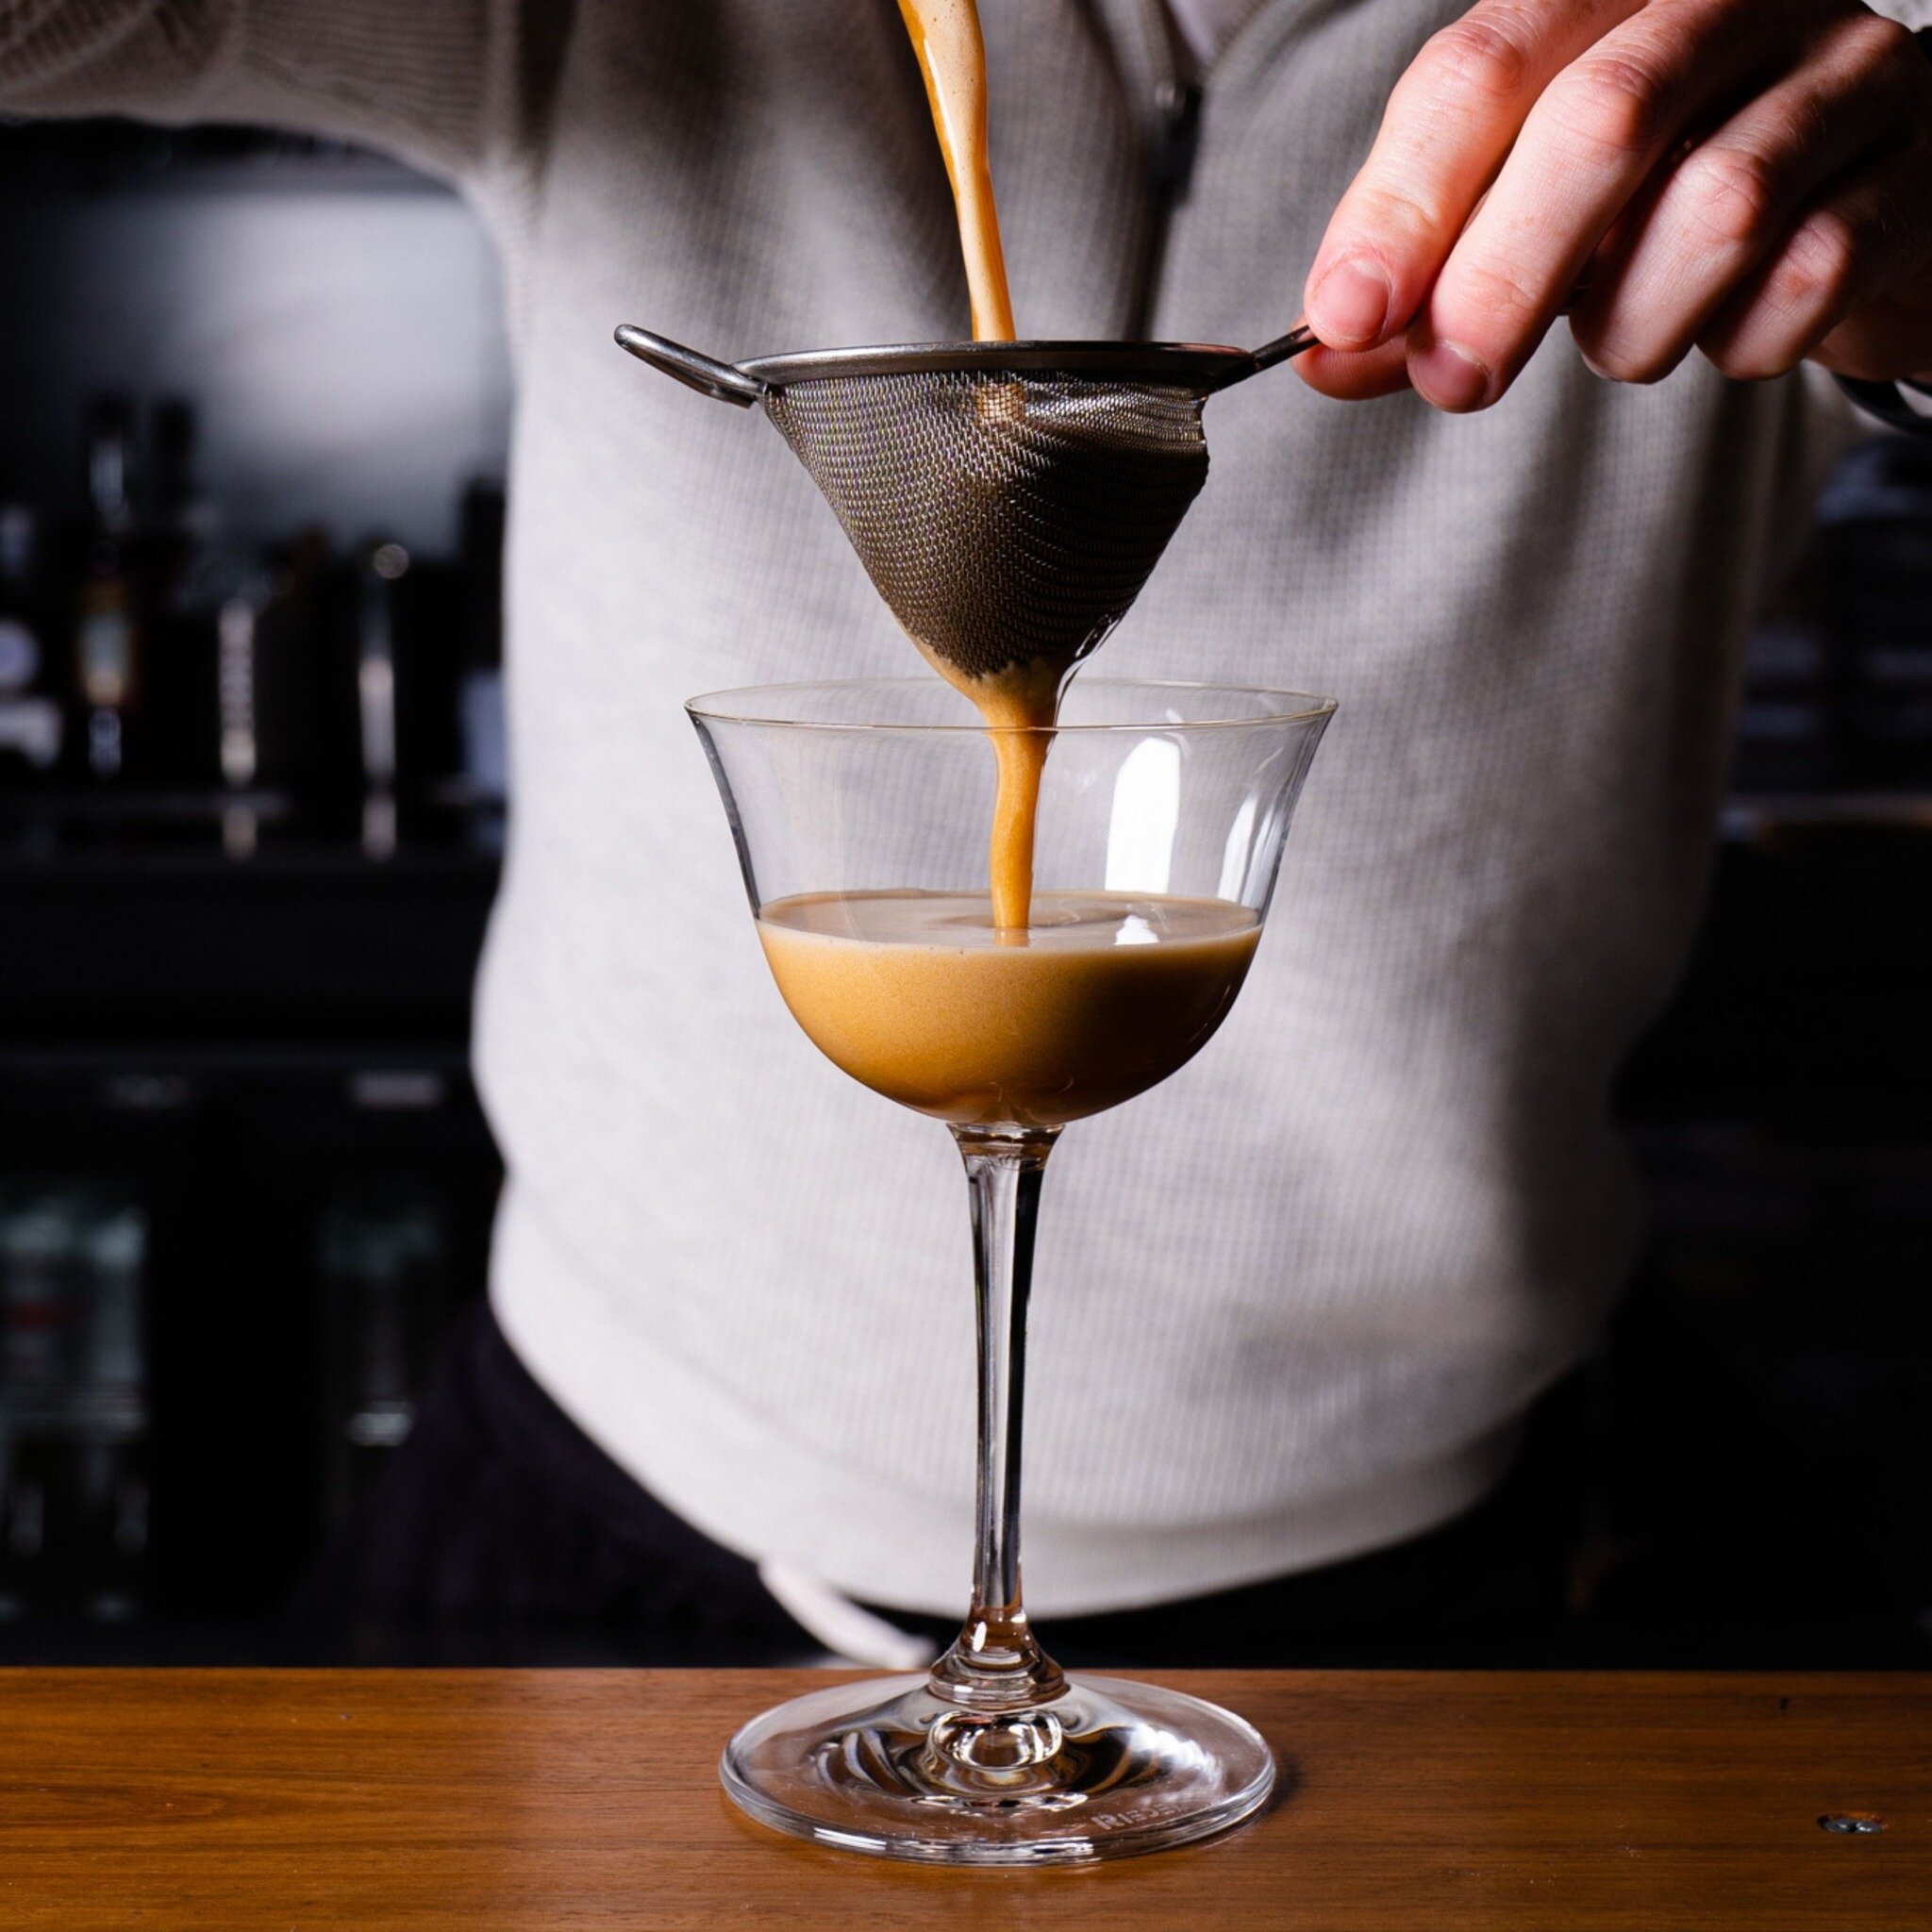 Hands up espresso martini lovers!

#deedot #bottomlessbrunchbrisbane #deedotcoffeehouse #hollandparkwest #brisbaneanyday #brisbanefoodie #brissy #brisbanecafe #brisbaneeats #brisbanecoffee #brisbanebrews